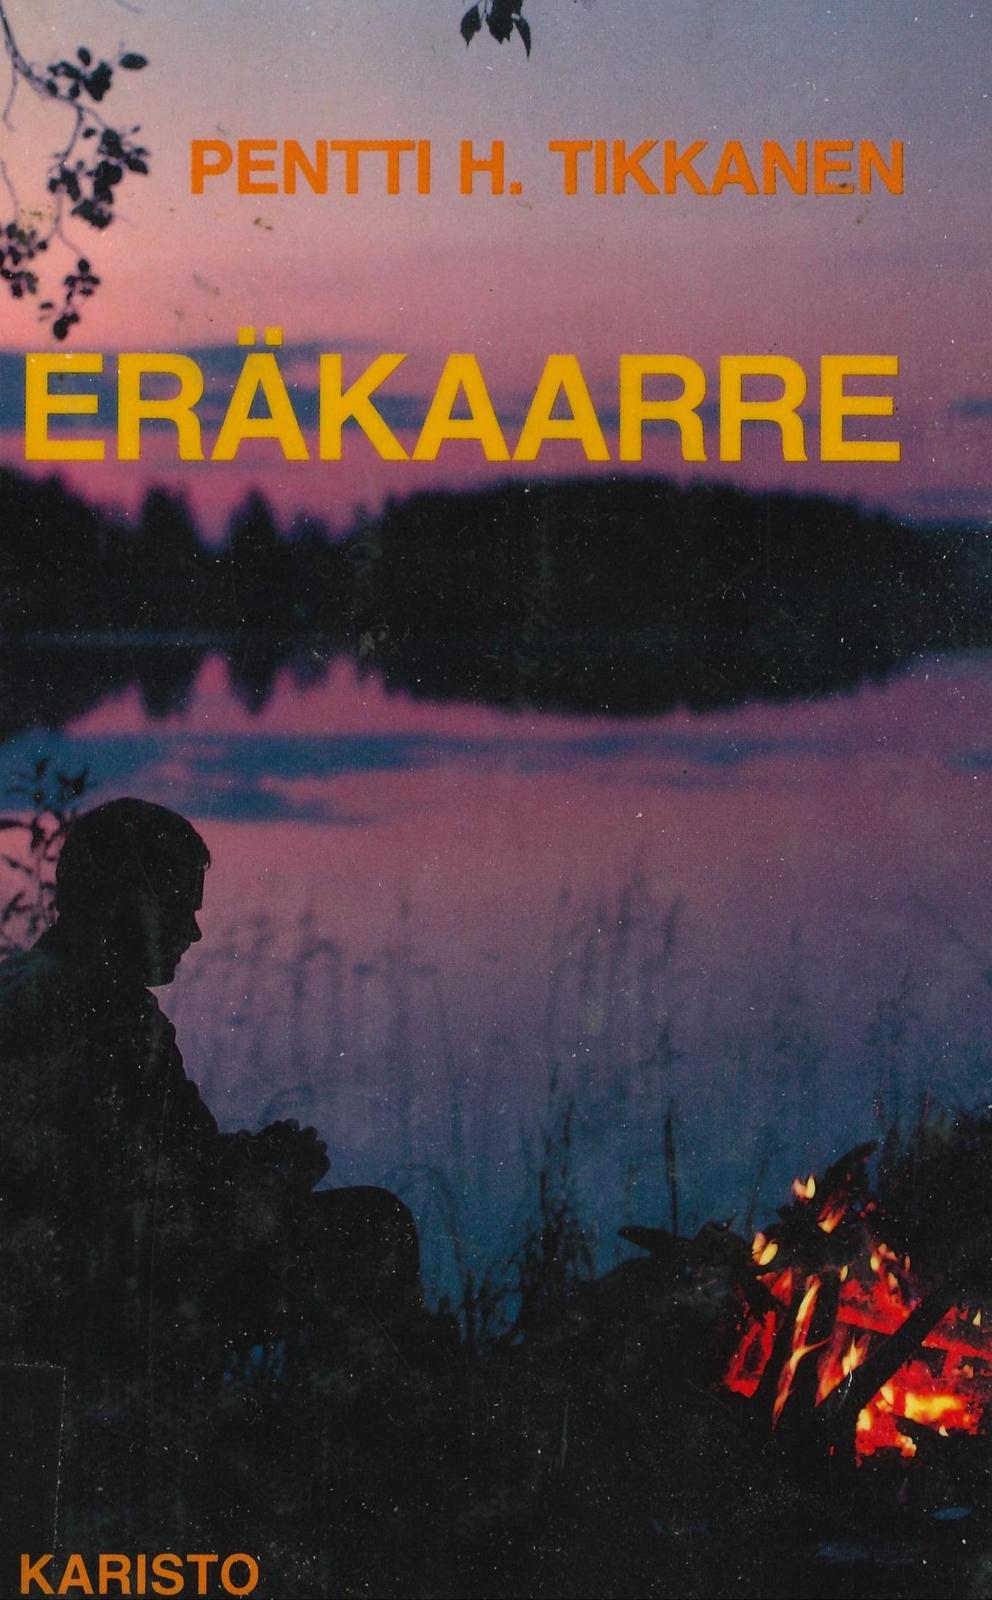 Pentti H. Tikkanen: Eräkaarre (Hardcover, Finnish language, 1987, Karisto)